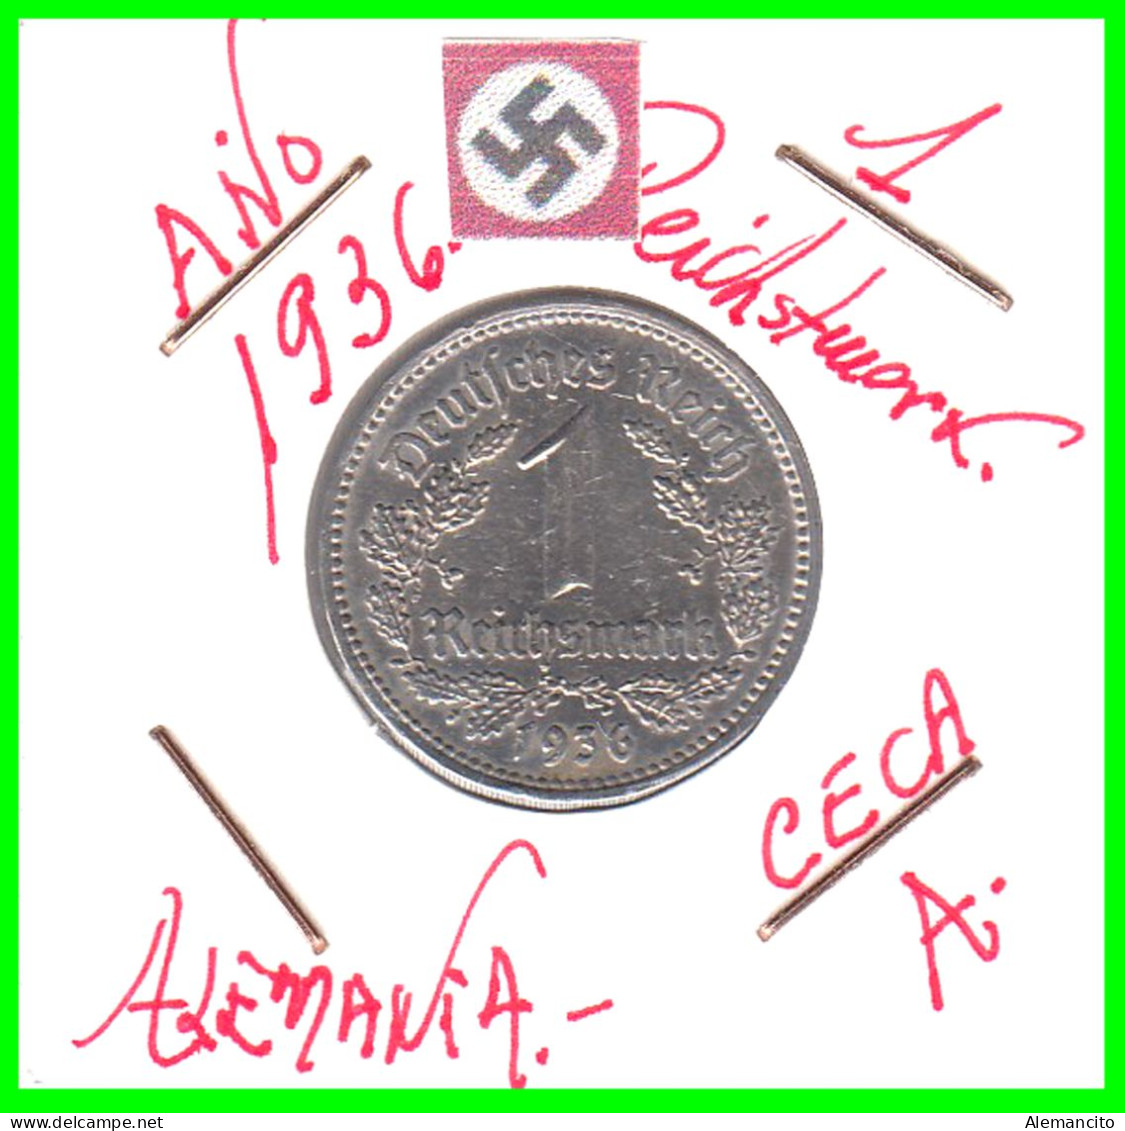 GERMANY TERCER REICH 1 REICHSMARK ( 1936 CECA - A )  ( DEUTSCHES REICHSMARK KM # 78 ) - 1 Reichsmark